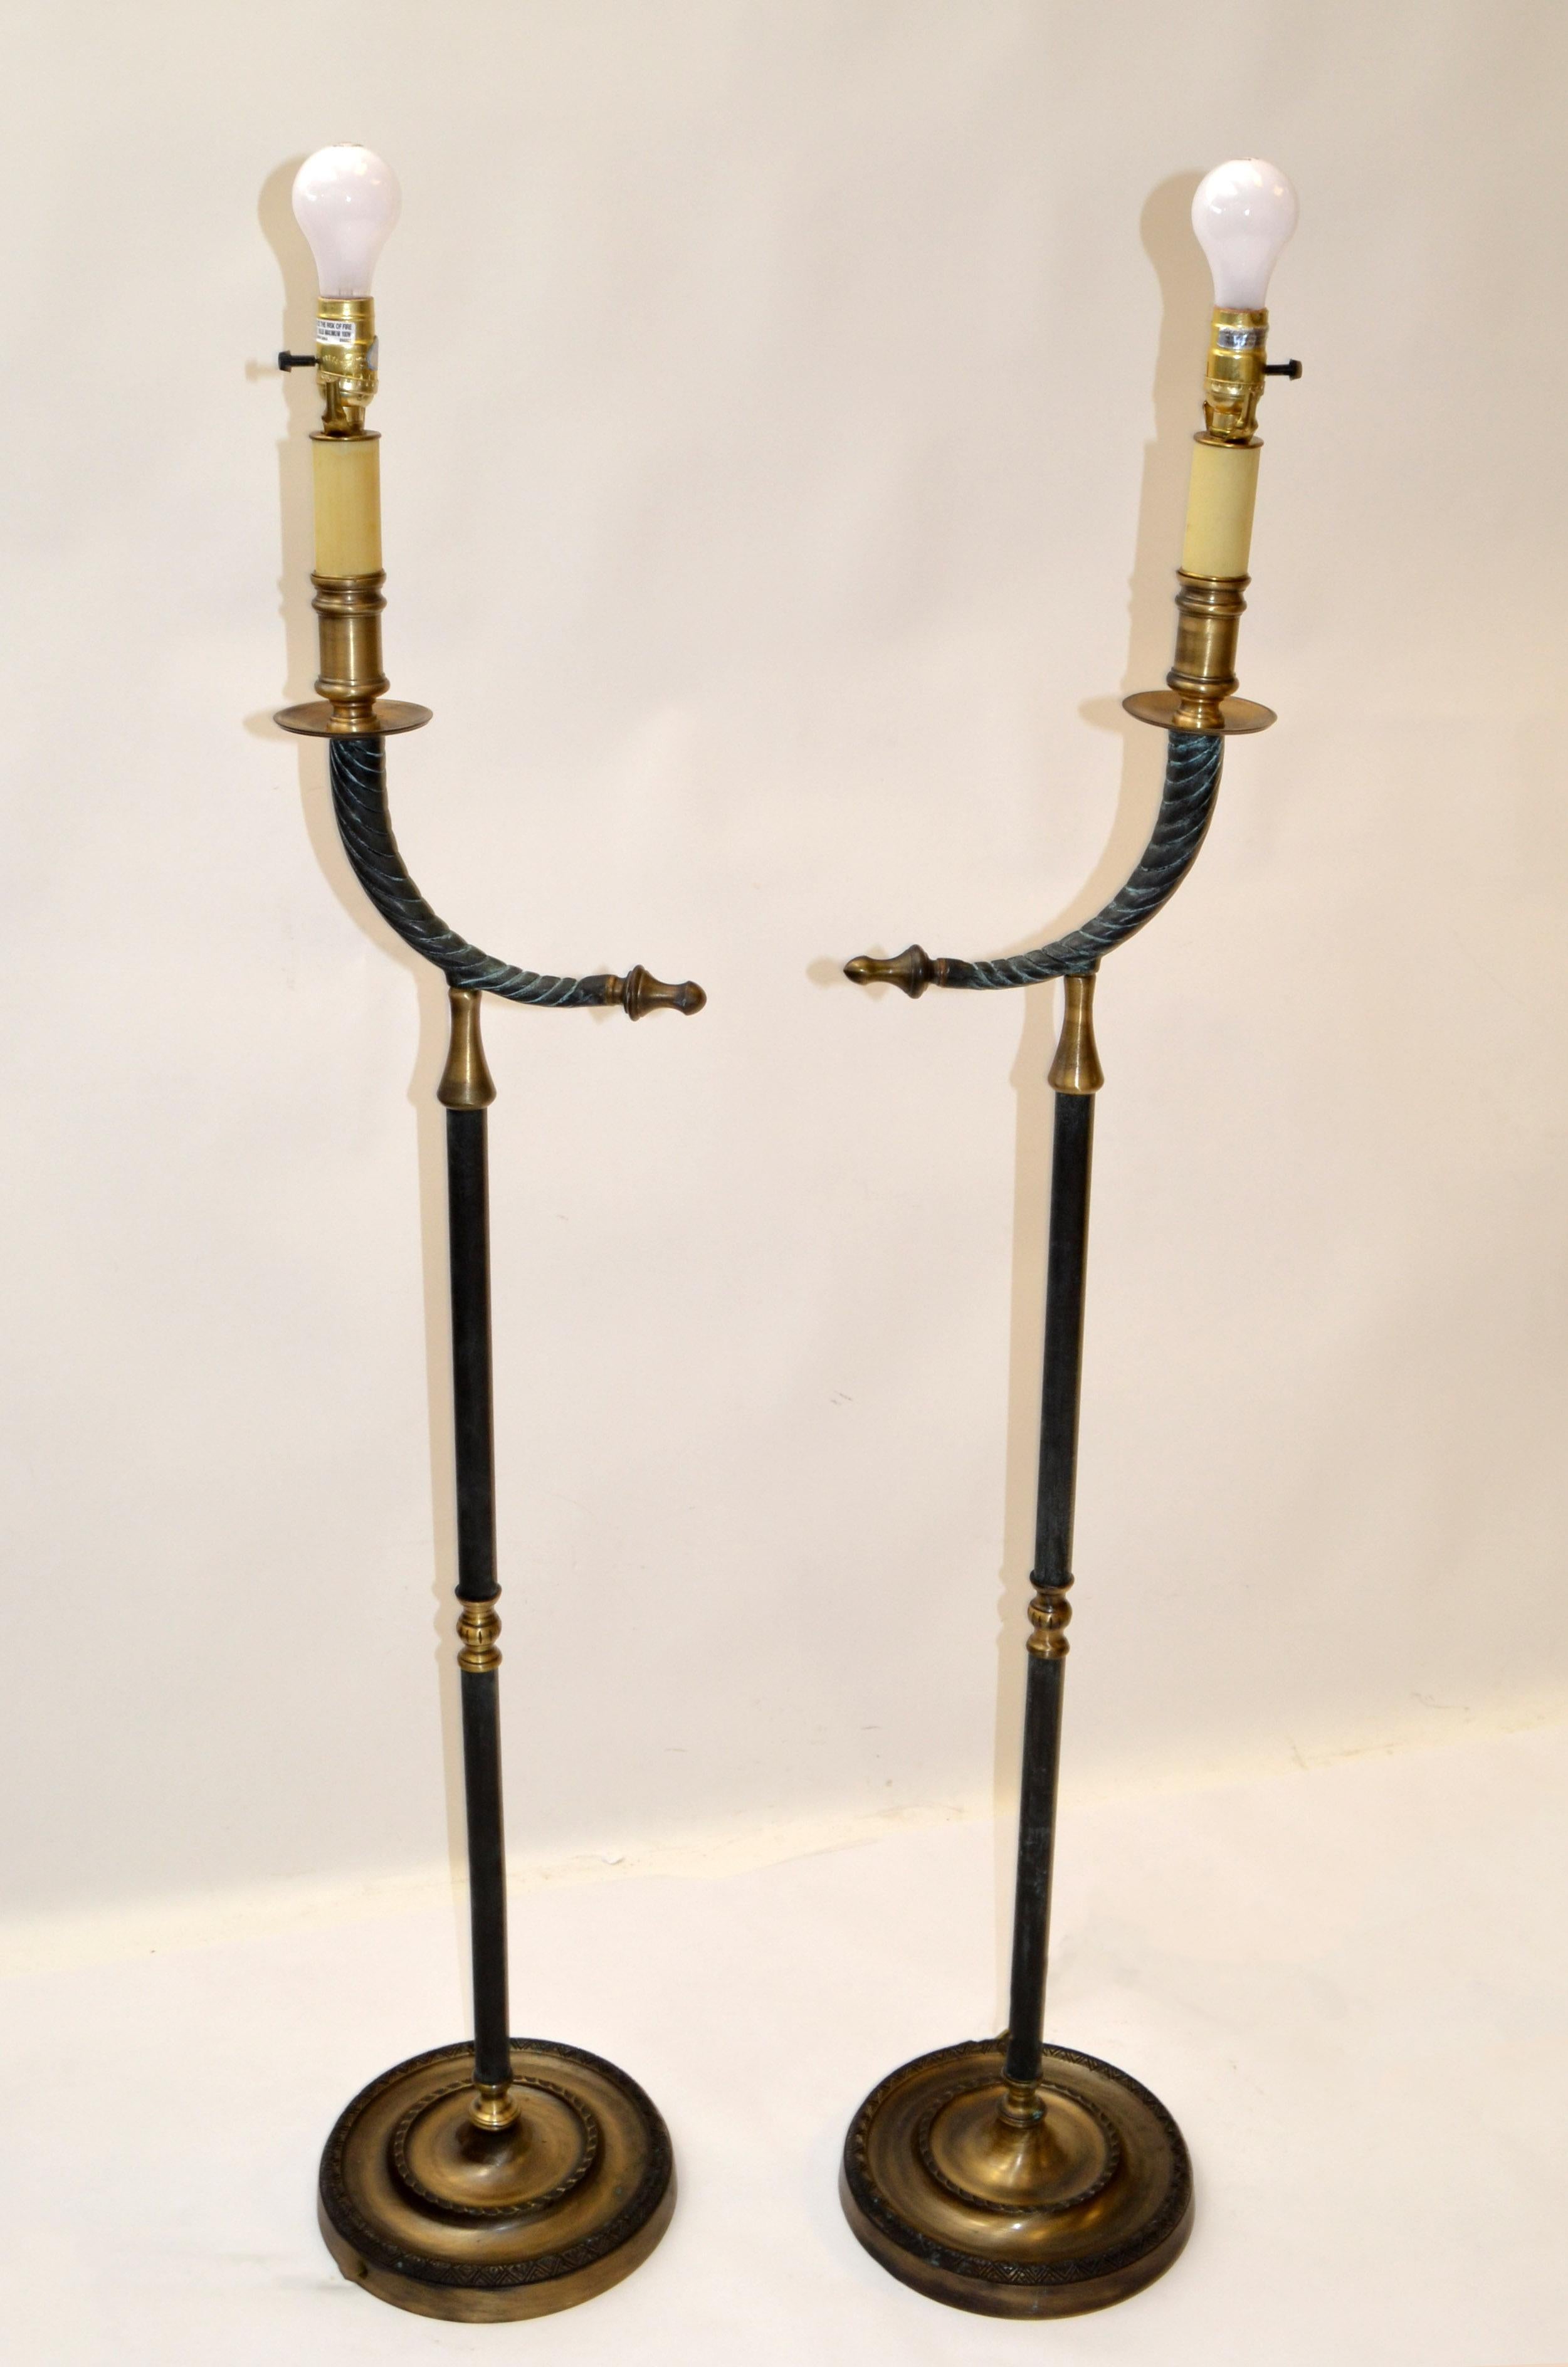 Ein Paar Hollywood Regency Stehlampen aus Bronze und Messing auf runden Sockeln.
Gegossen in Bronze, verziert mit einem Arm aus Messing und einem Horn in Form einer Bronzelampe.
Sie sind für den US-Markt verdrahtet, UL-gelistet und können mit einer